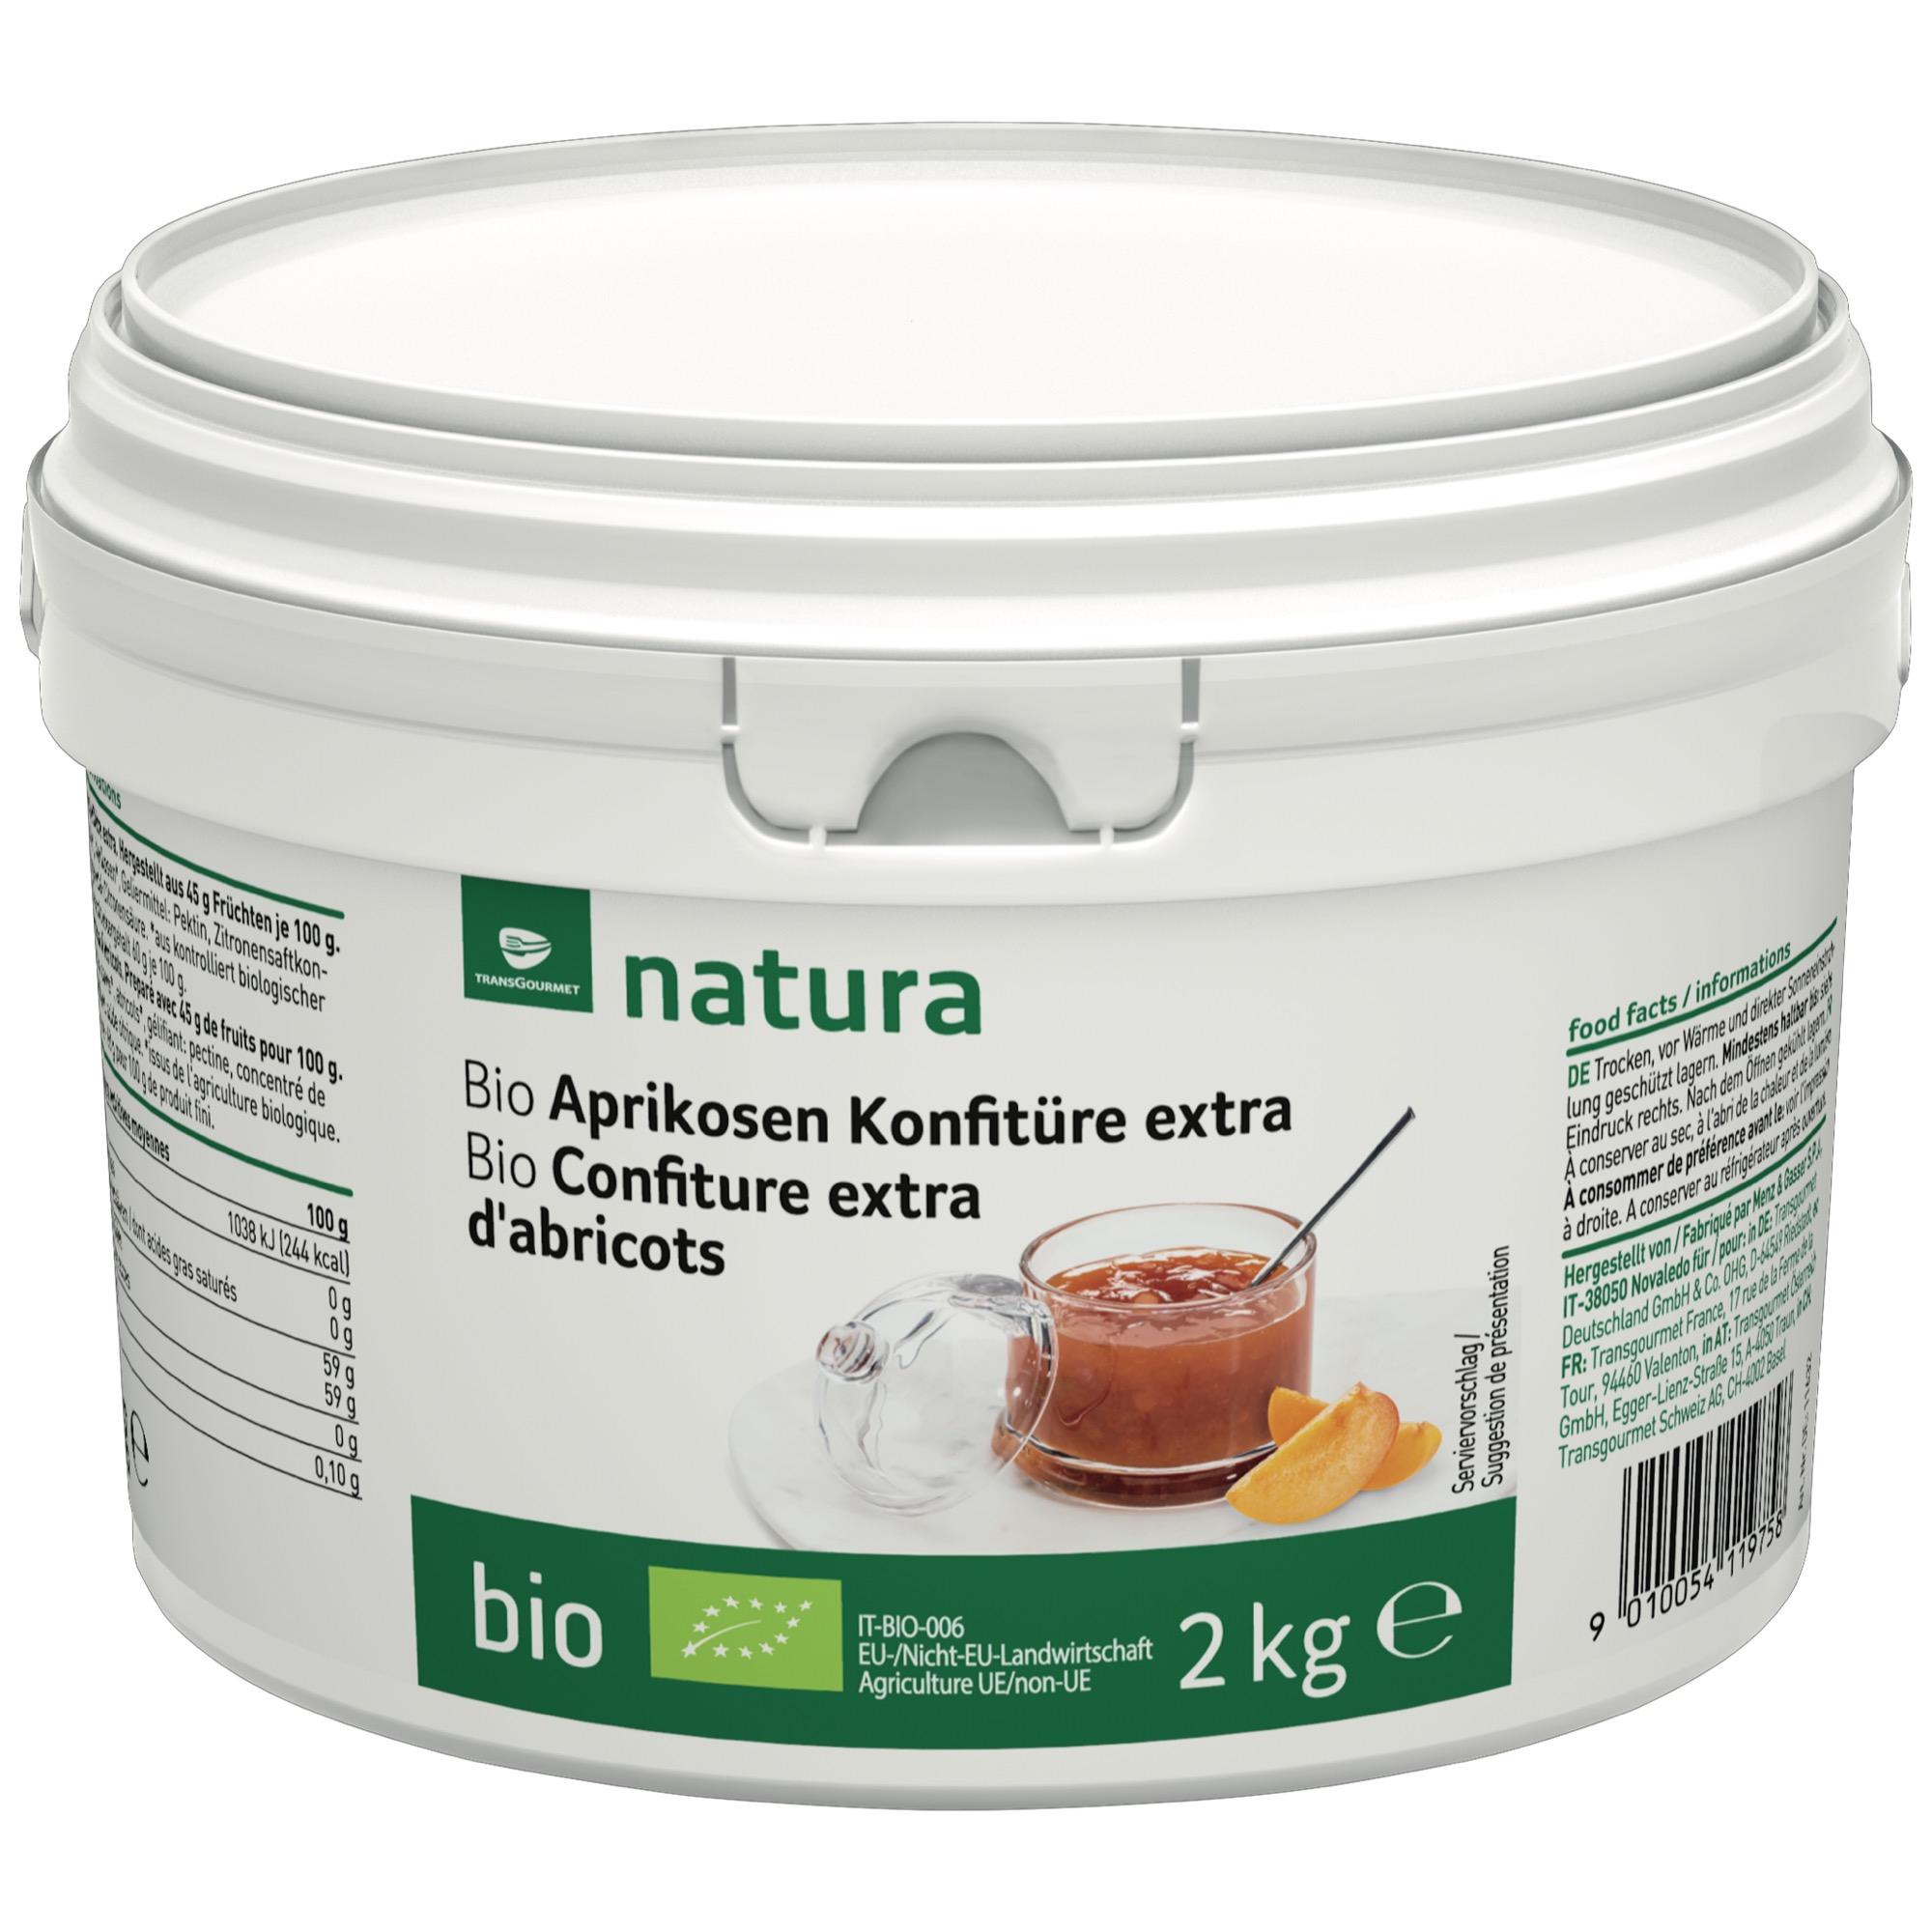 Natura Bio džem marhuľa 45% 2kg